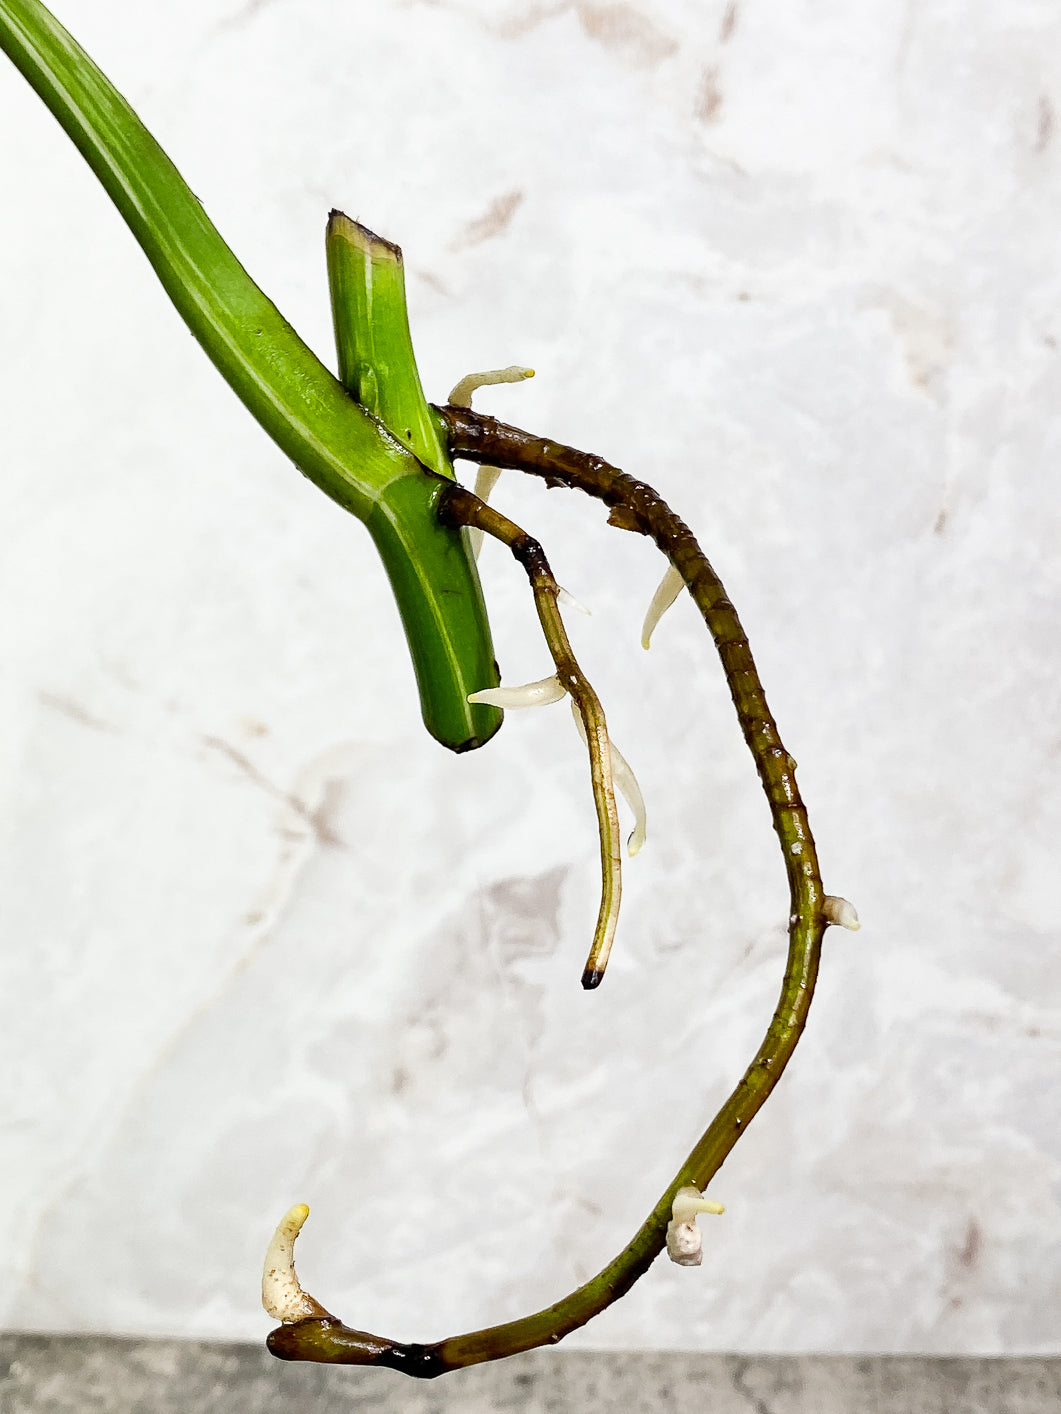 Monstera Albo Variegated 1 leaf 1 growing bud rooting